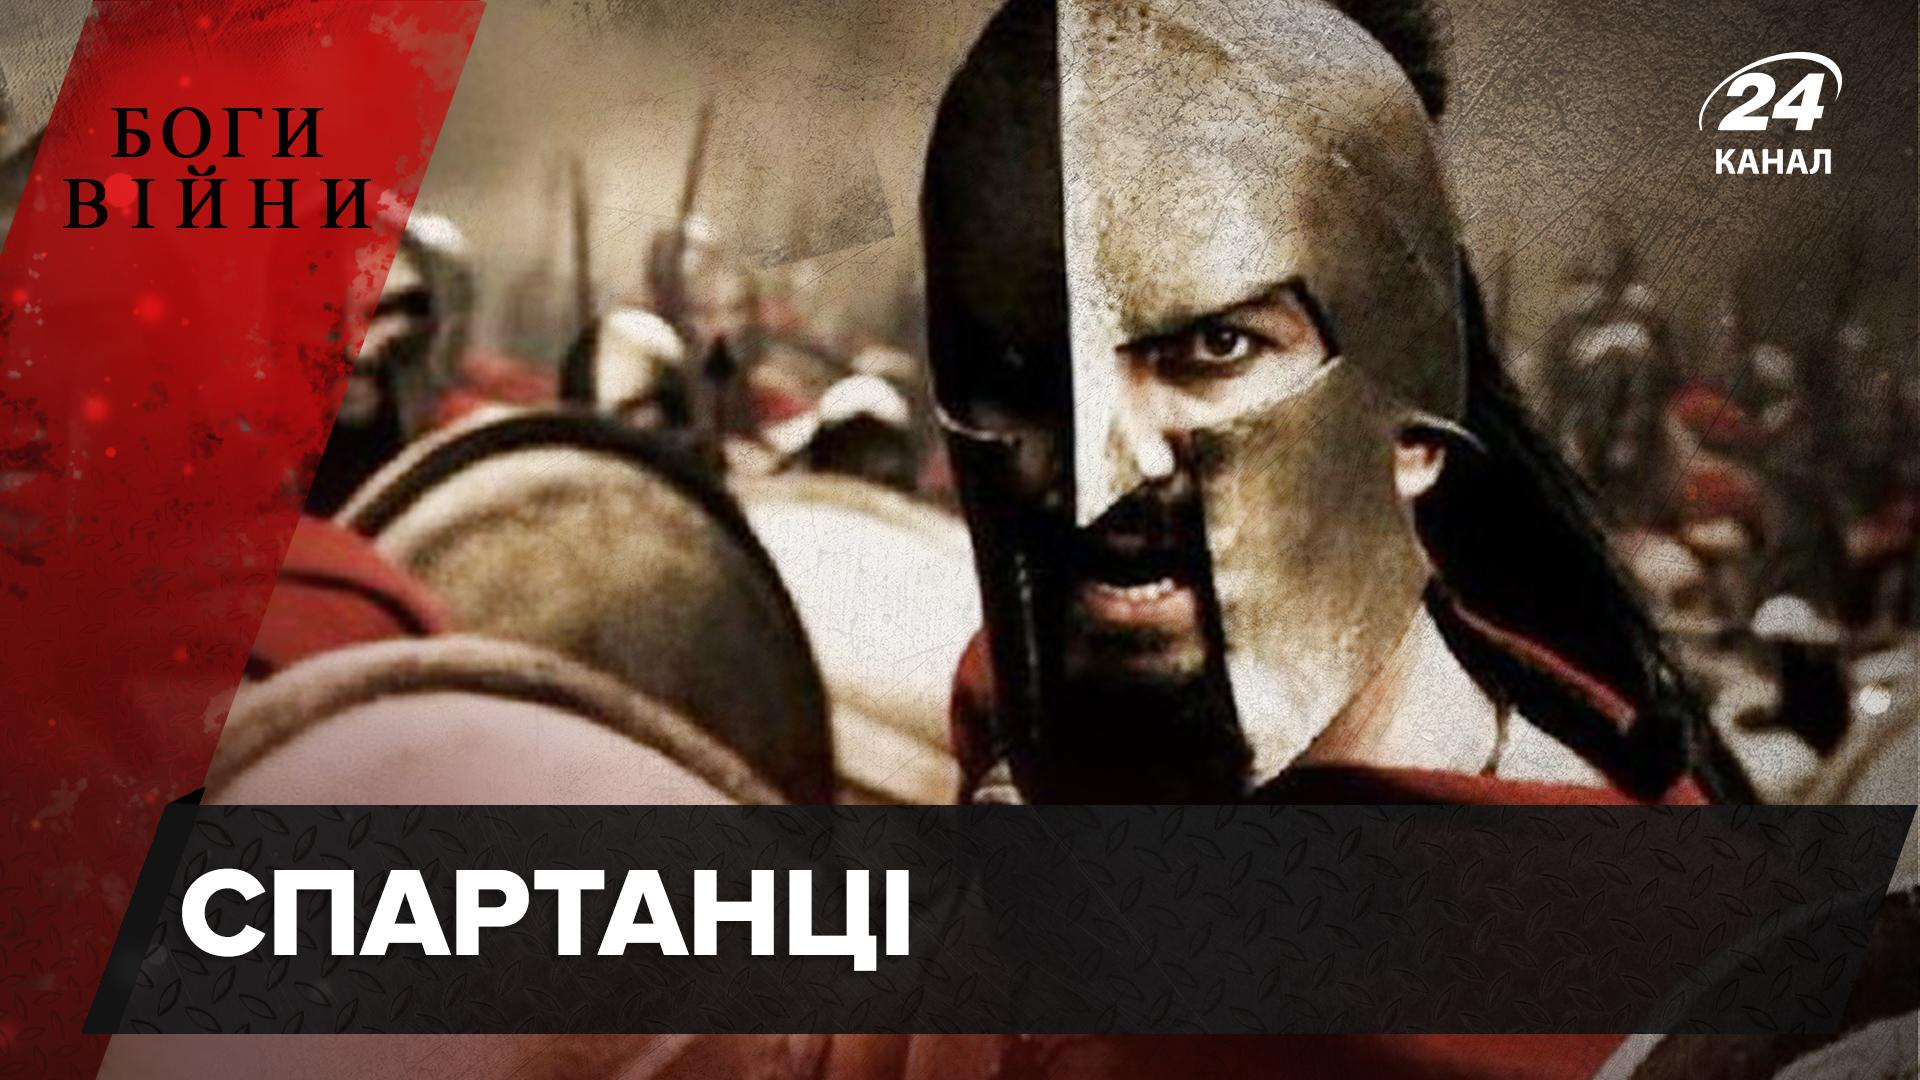 Убивали ли детей лучшие воины человечества: вся правда о спартанцах